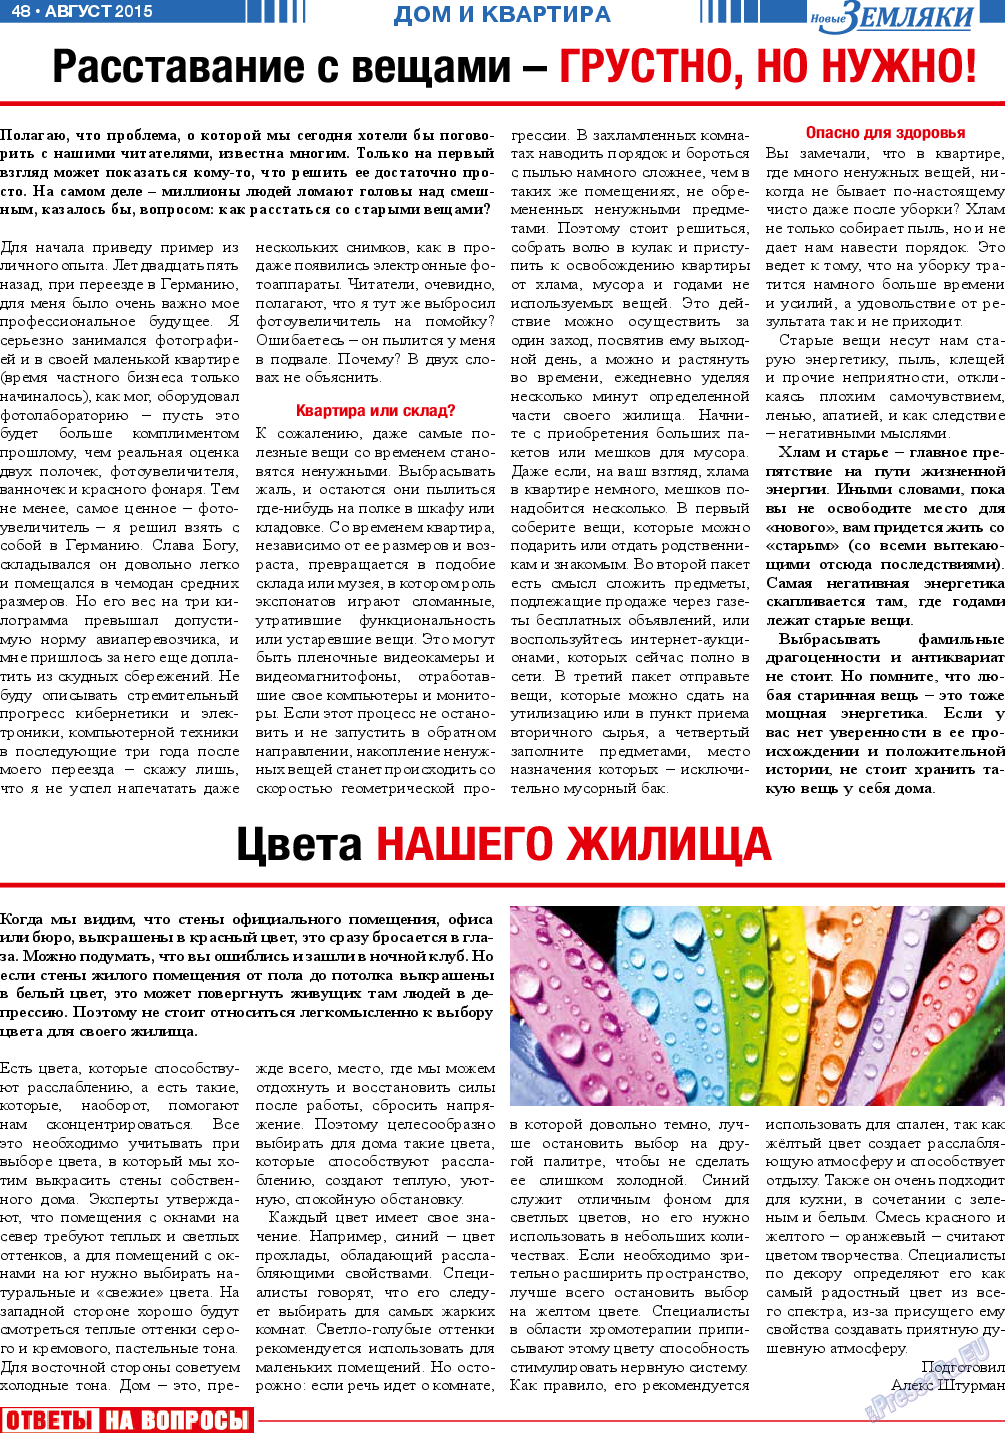 Новые Земляки, газета. 2015 №8 стр.48